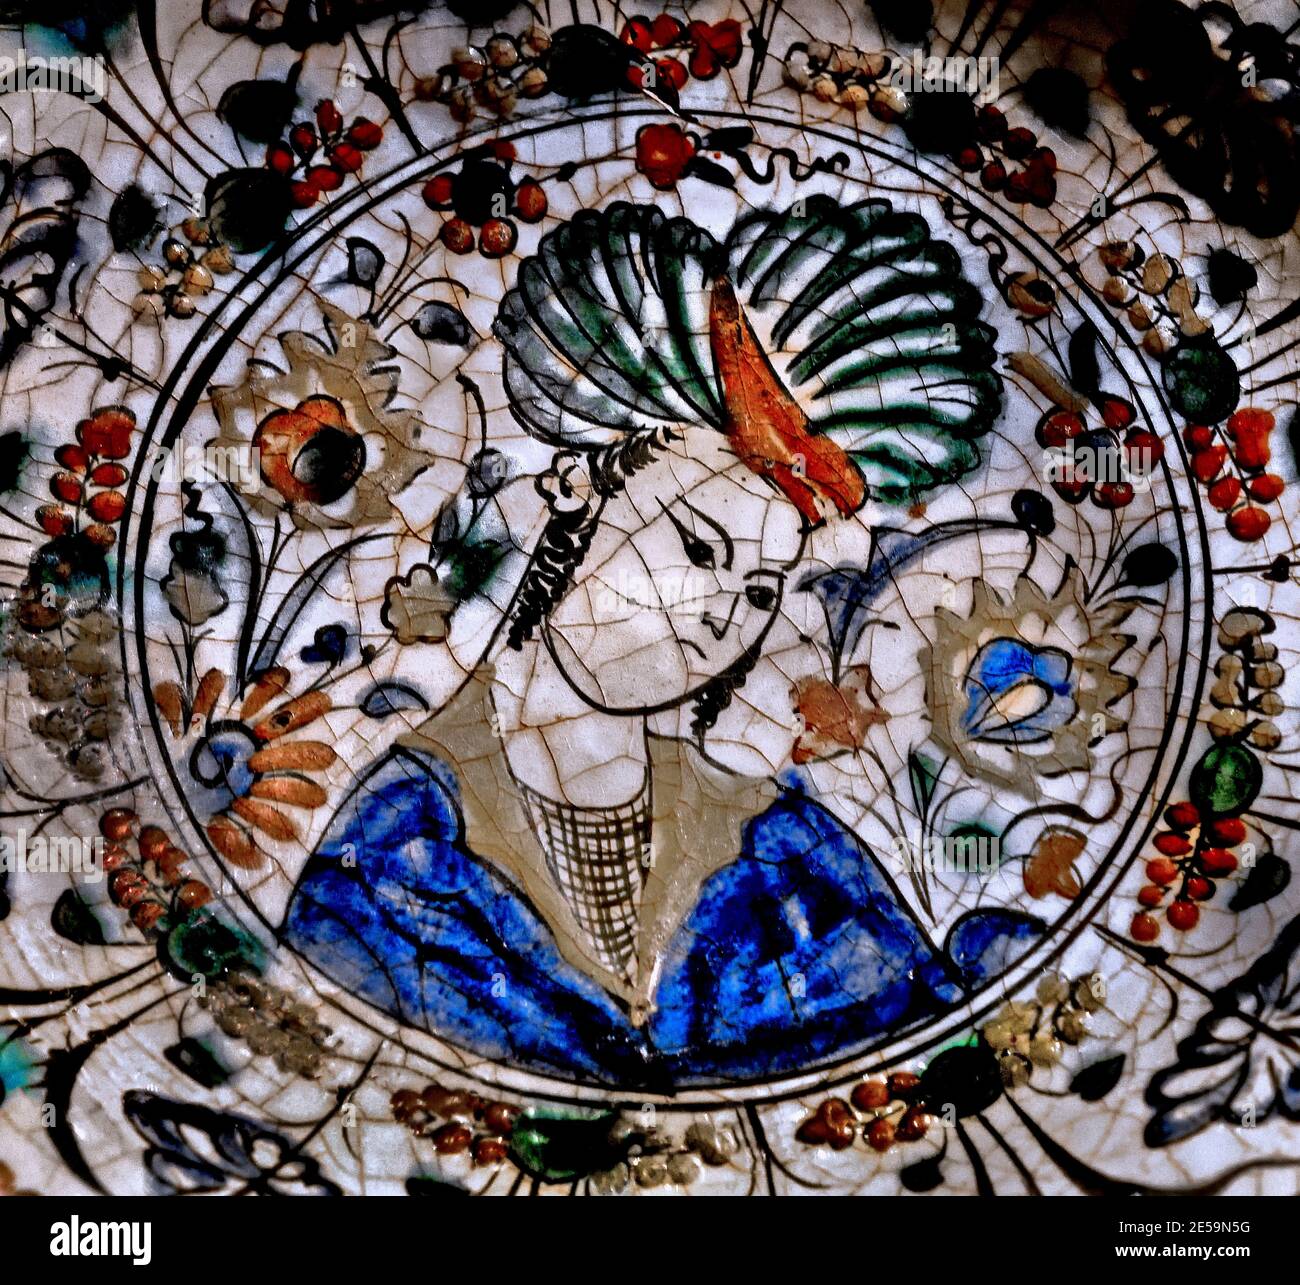 Platte 1600 IRAN Safavid Periode (1501-1722/36) Korpus, Unterglasur Malerei in schwarz, blau und grün mit roten und gelben rutscht ( die Safavid-Dynastie war eine der bedeutendsten herrschenden Dynastien des Iran von 1501 bis 1736. ) Stockfoto